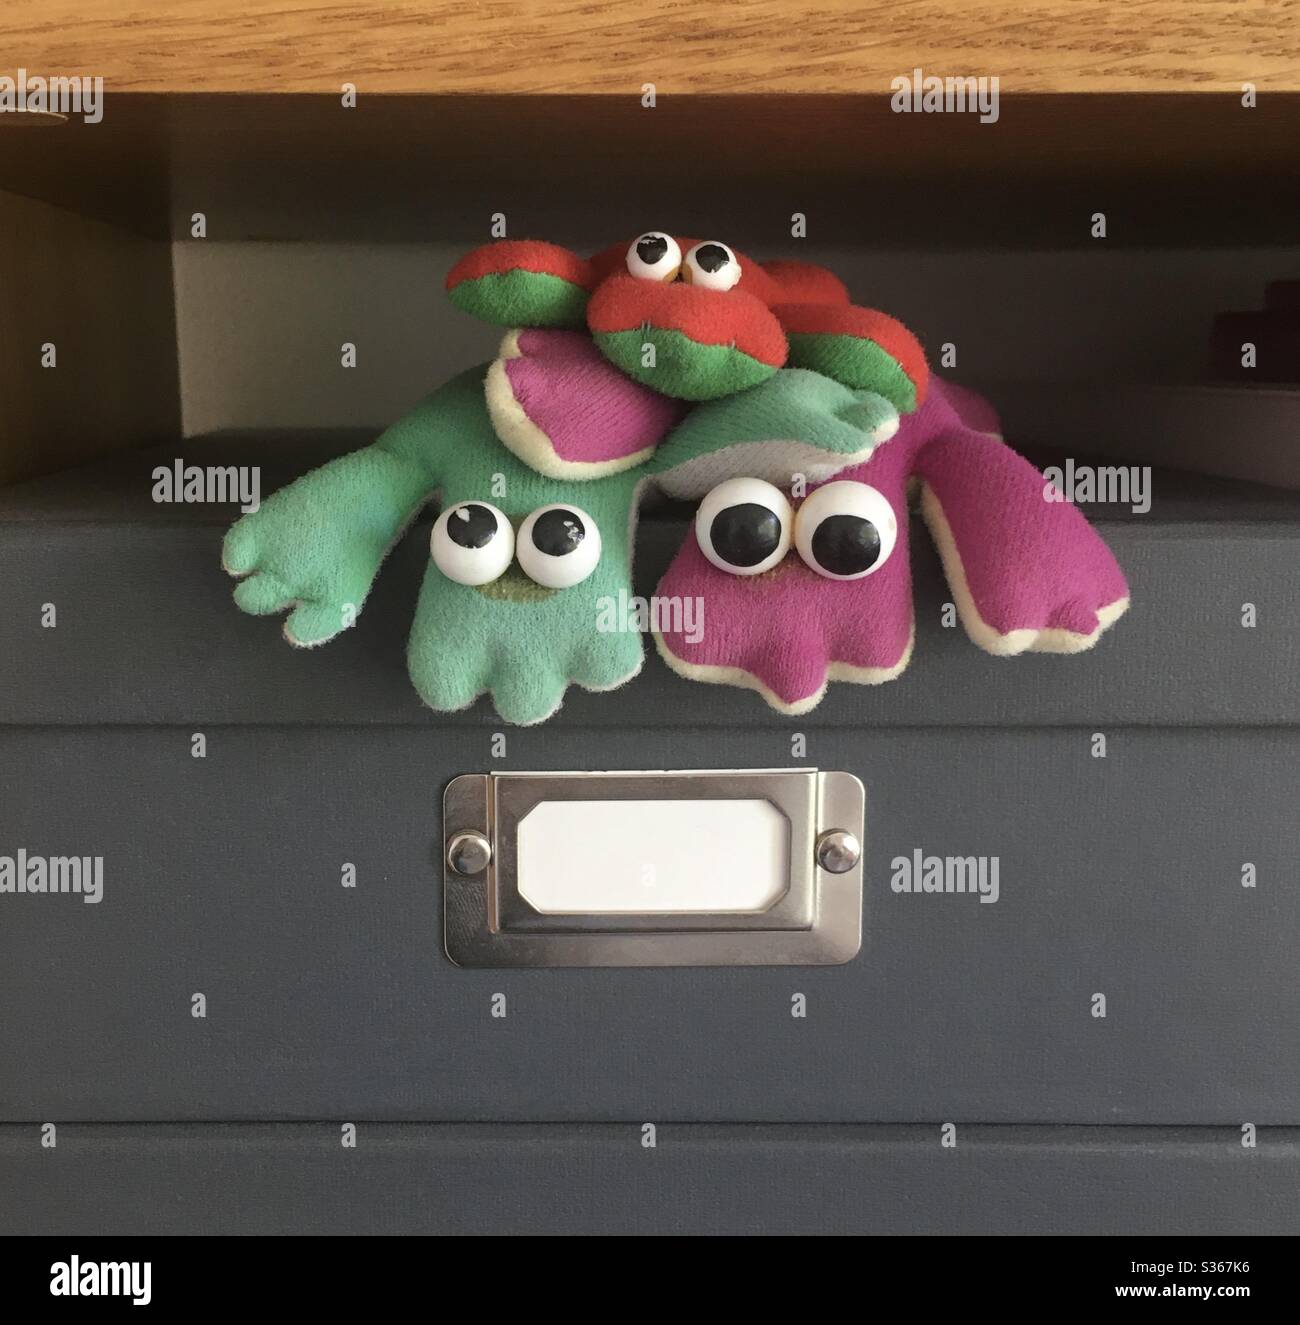 Familia de tres ranas de juguete blando sentadas en una caja de limadura Foto de stock